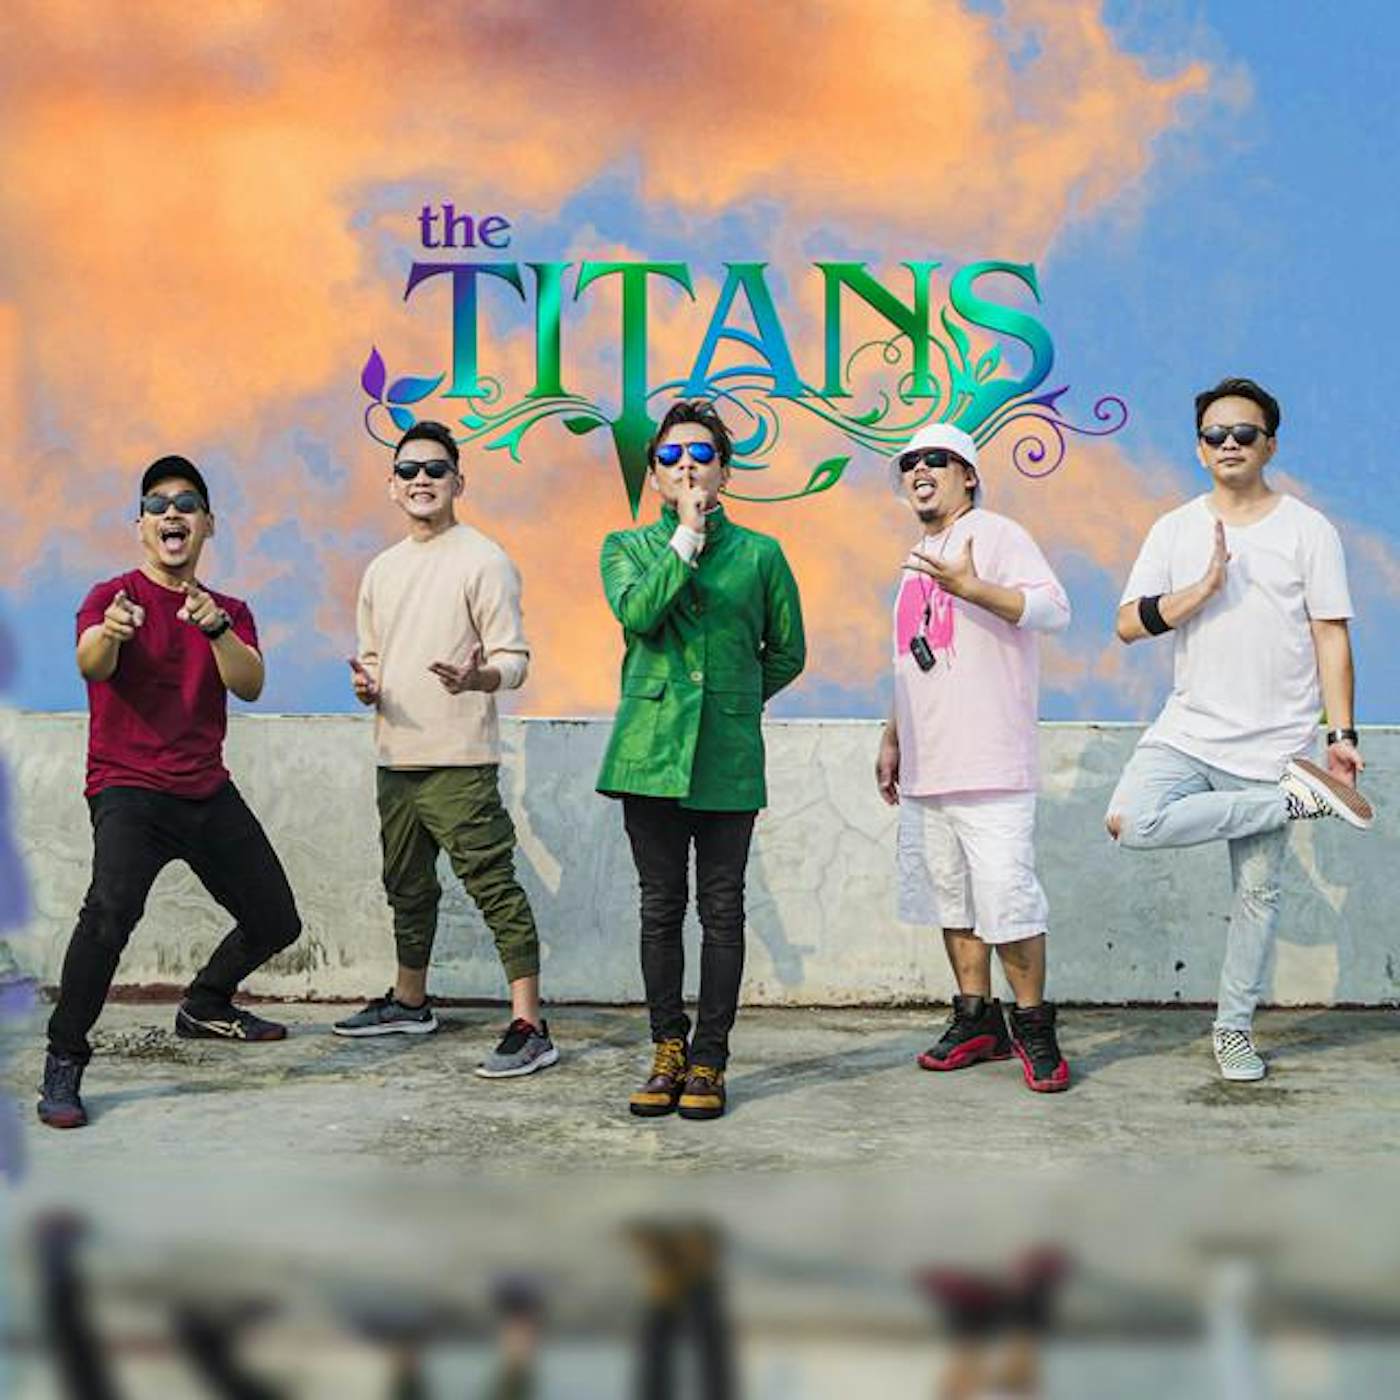 The TITANS